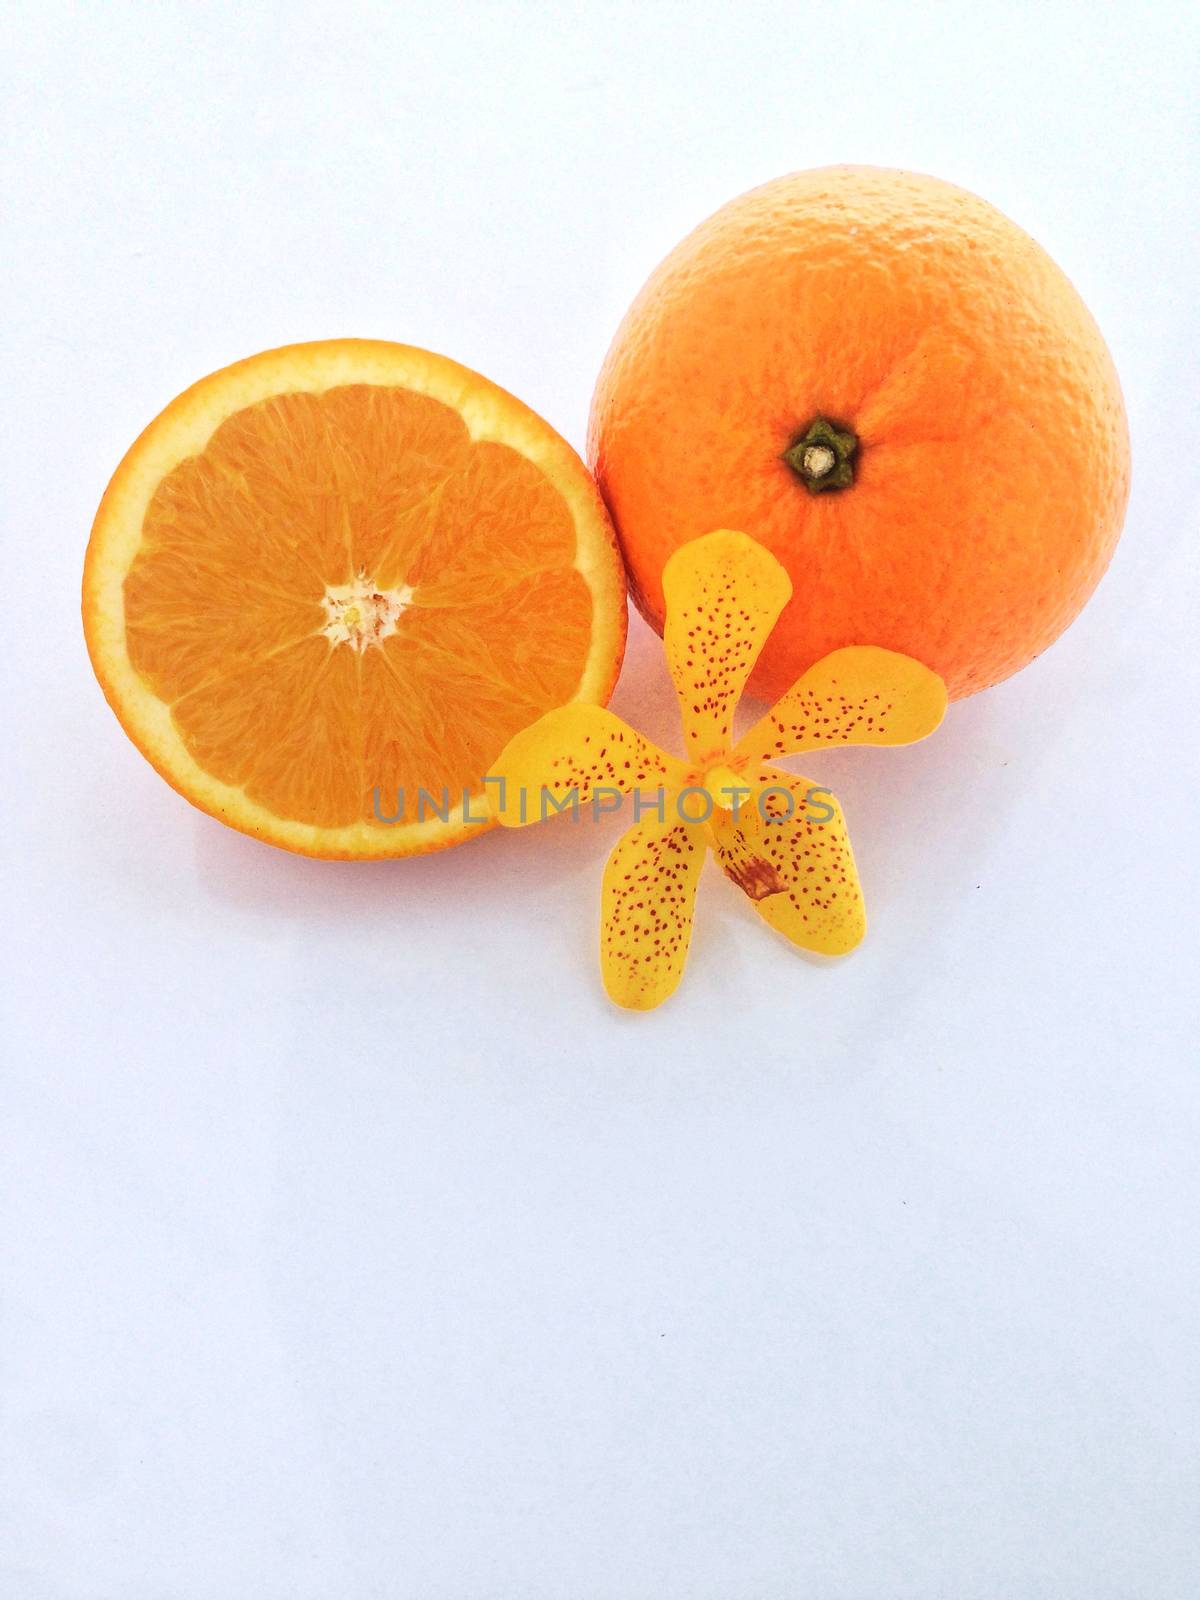 Fresh orange and slices on white background.